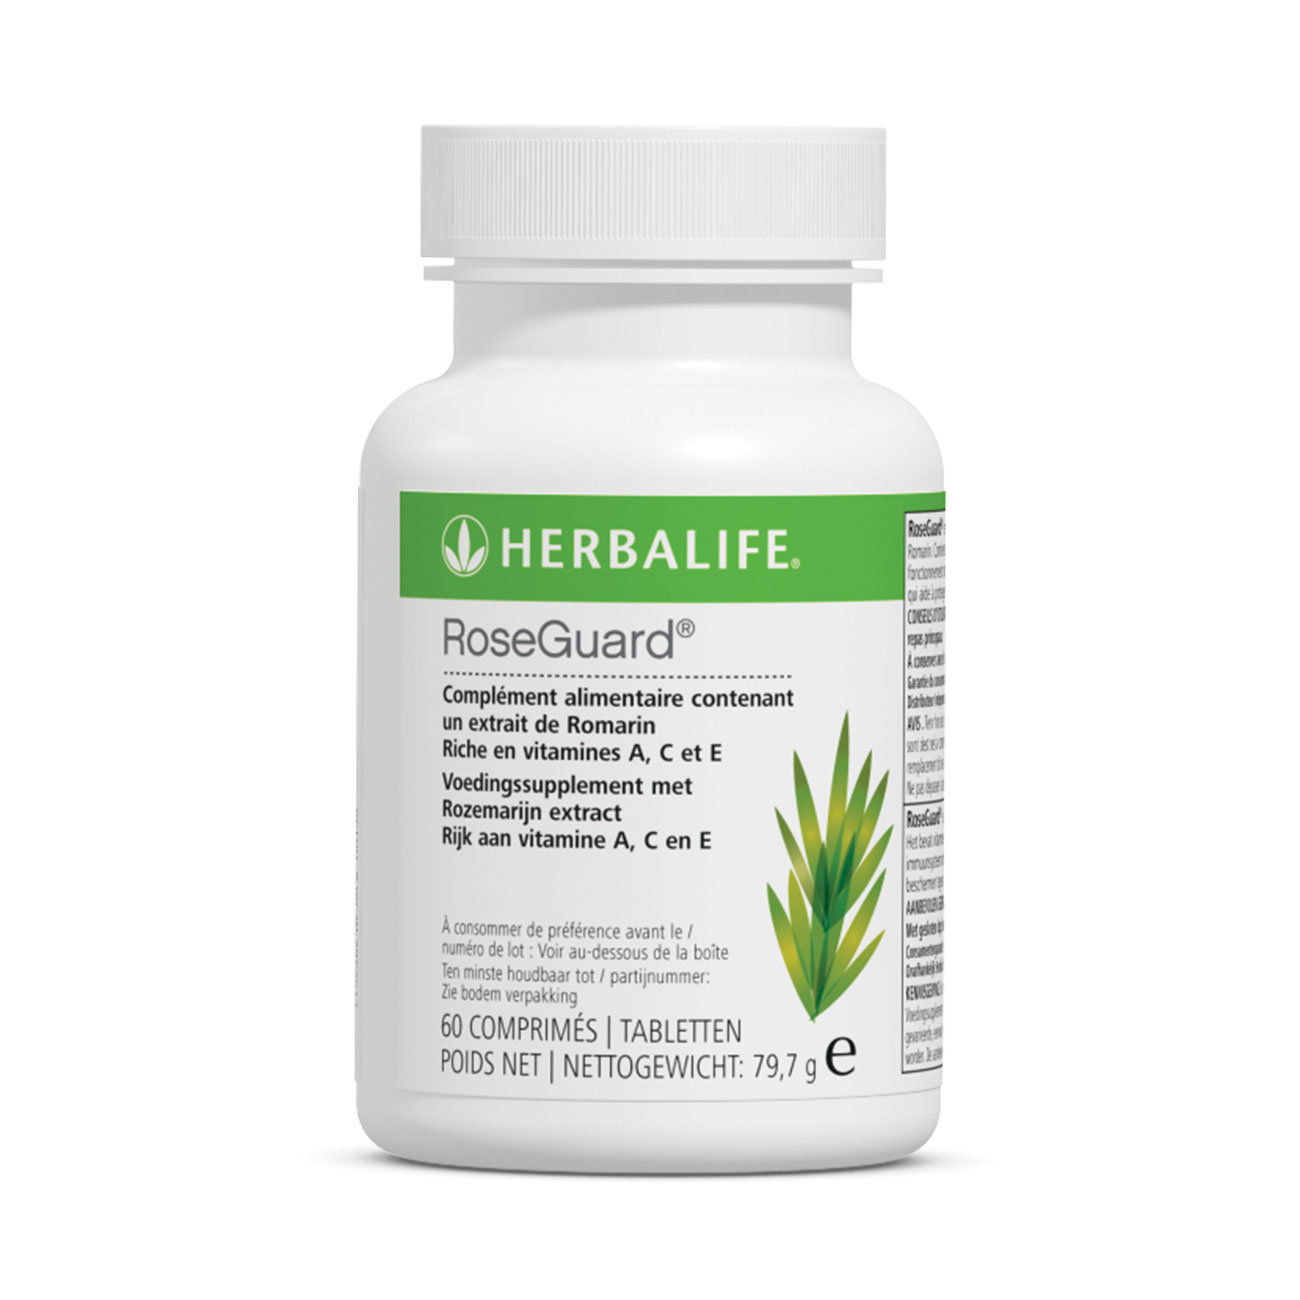 RoseGuard® Complément alimentaire riche en vitamines A, C, E product shot